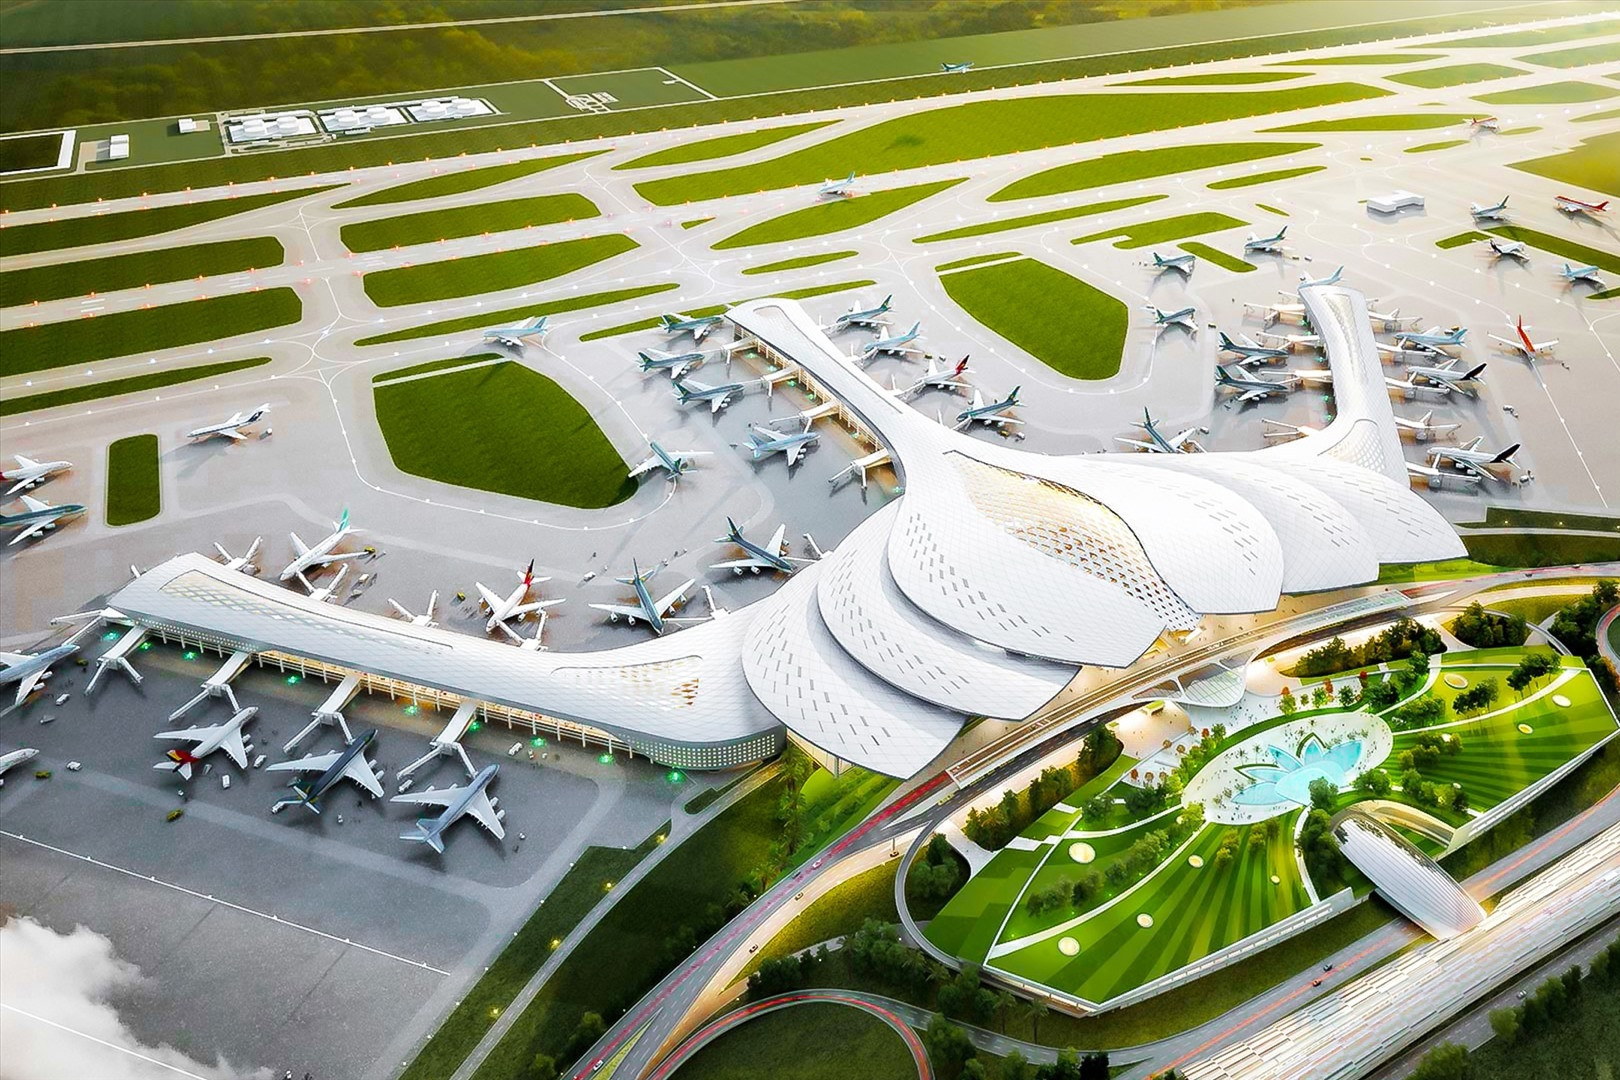 Ủy ban Kinh tế: Tiến độ dự án sân bay Long Thành rất chậm